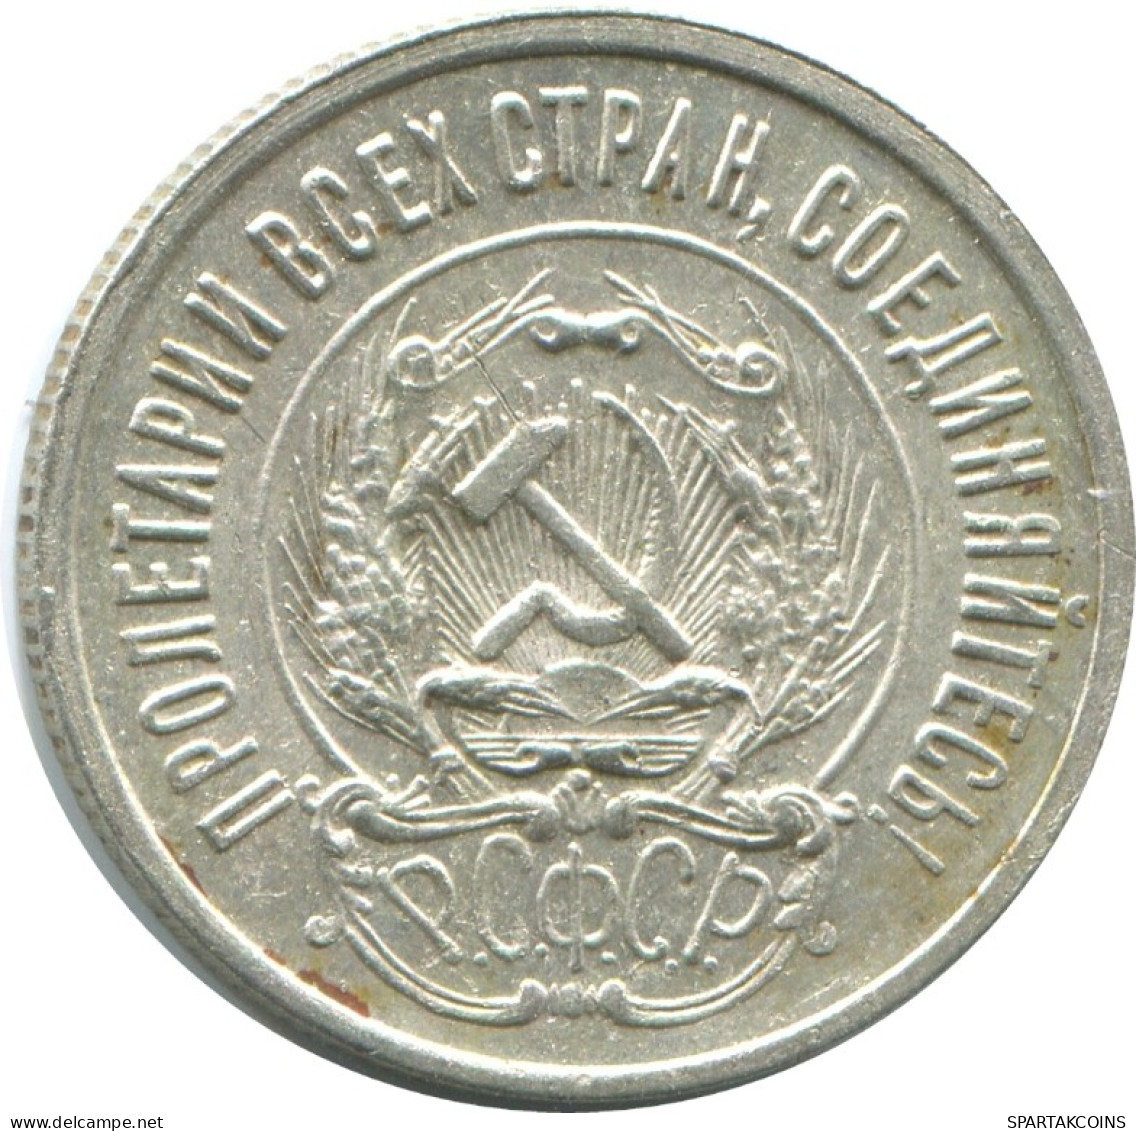 20 KOPEKS 1923 RUSSLAND RUSSIA RSFSR SILBER Münze HIGH GRADE #AF519.4.D.A - Russia